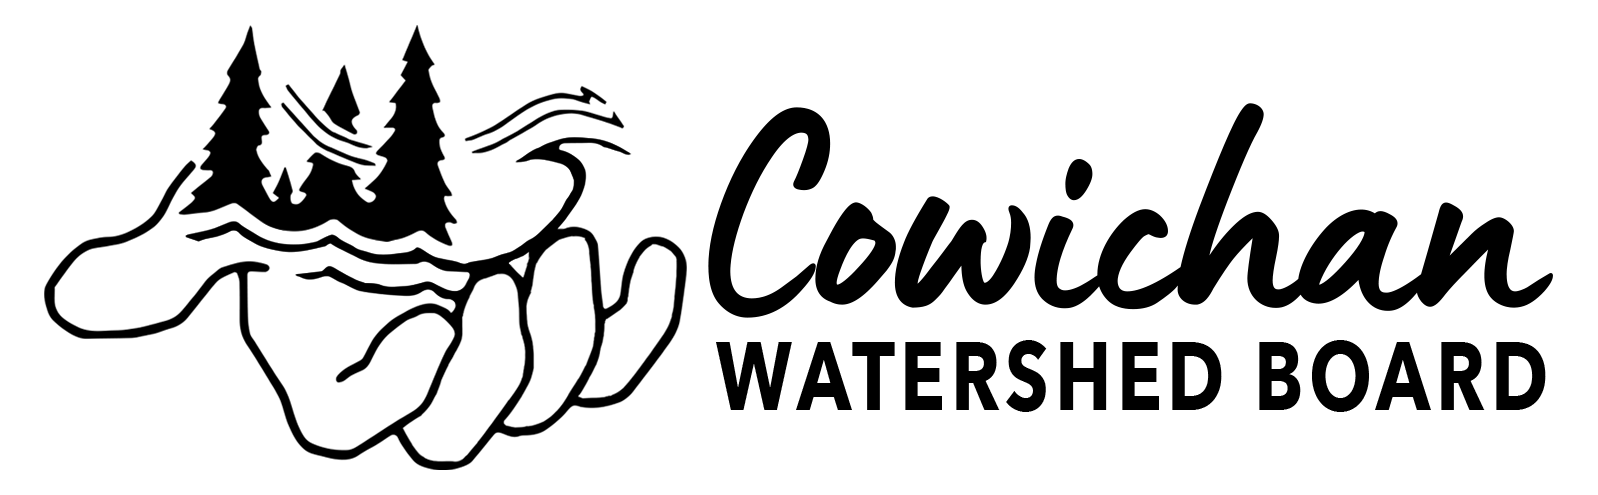 Logo-Working-Draft_black.png